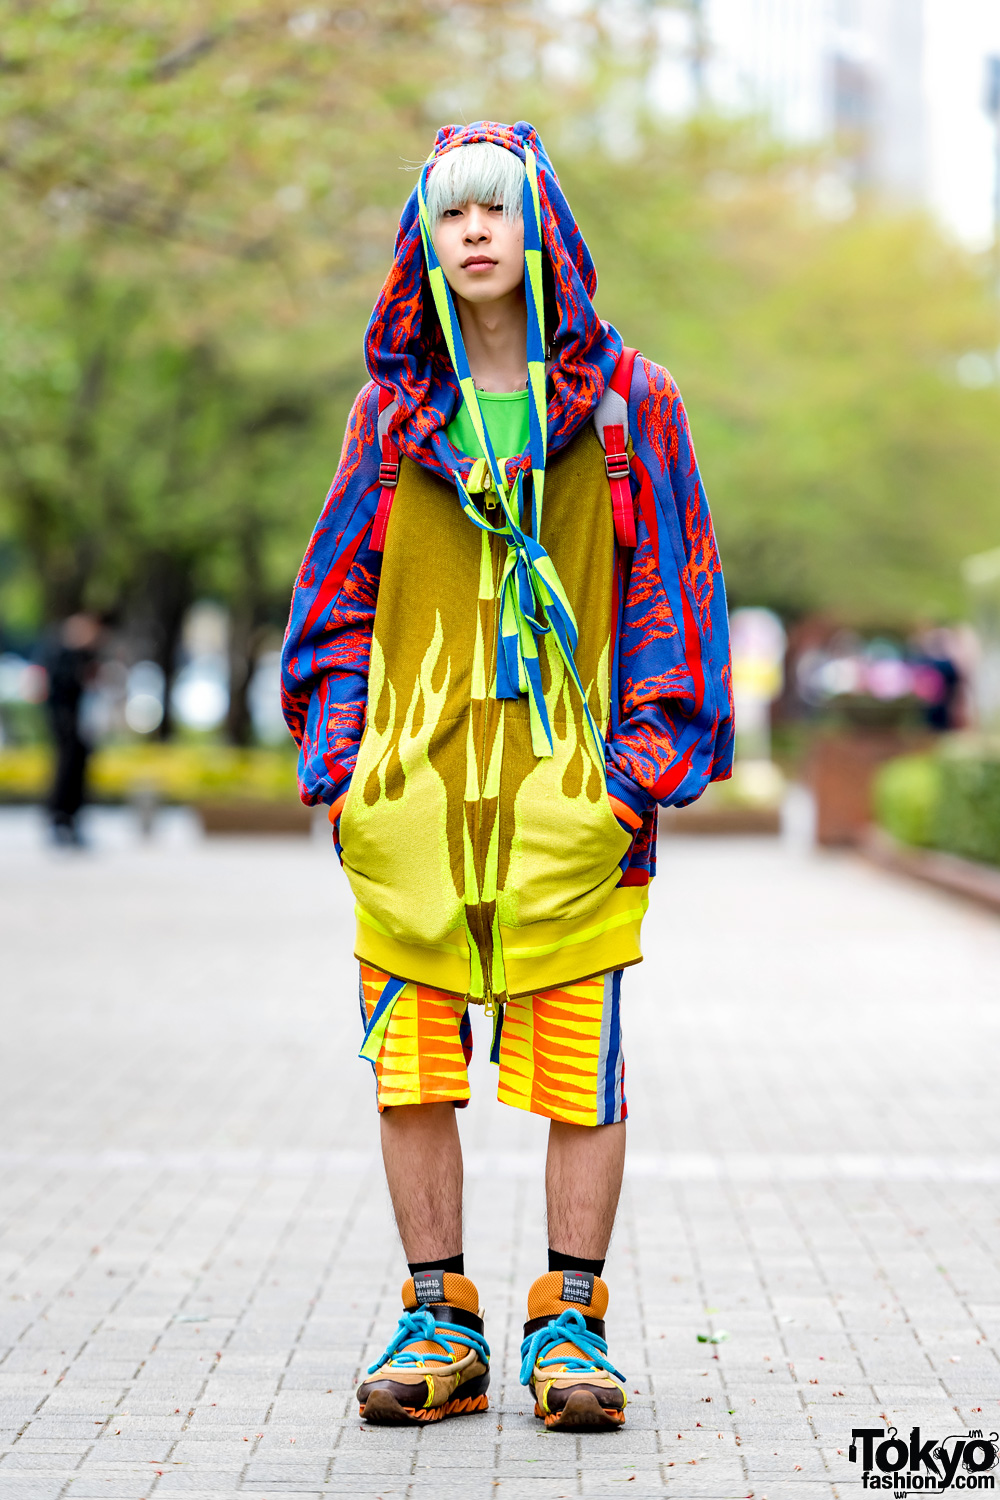 Colorful Tokyo Streetwear w/ Bernhard Willhelm Fashion & Bernhard Willhelm Sneakers